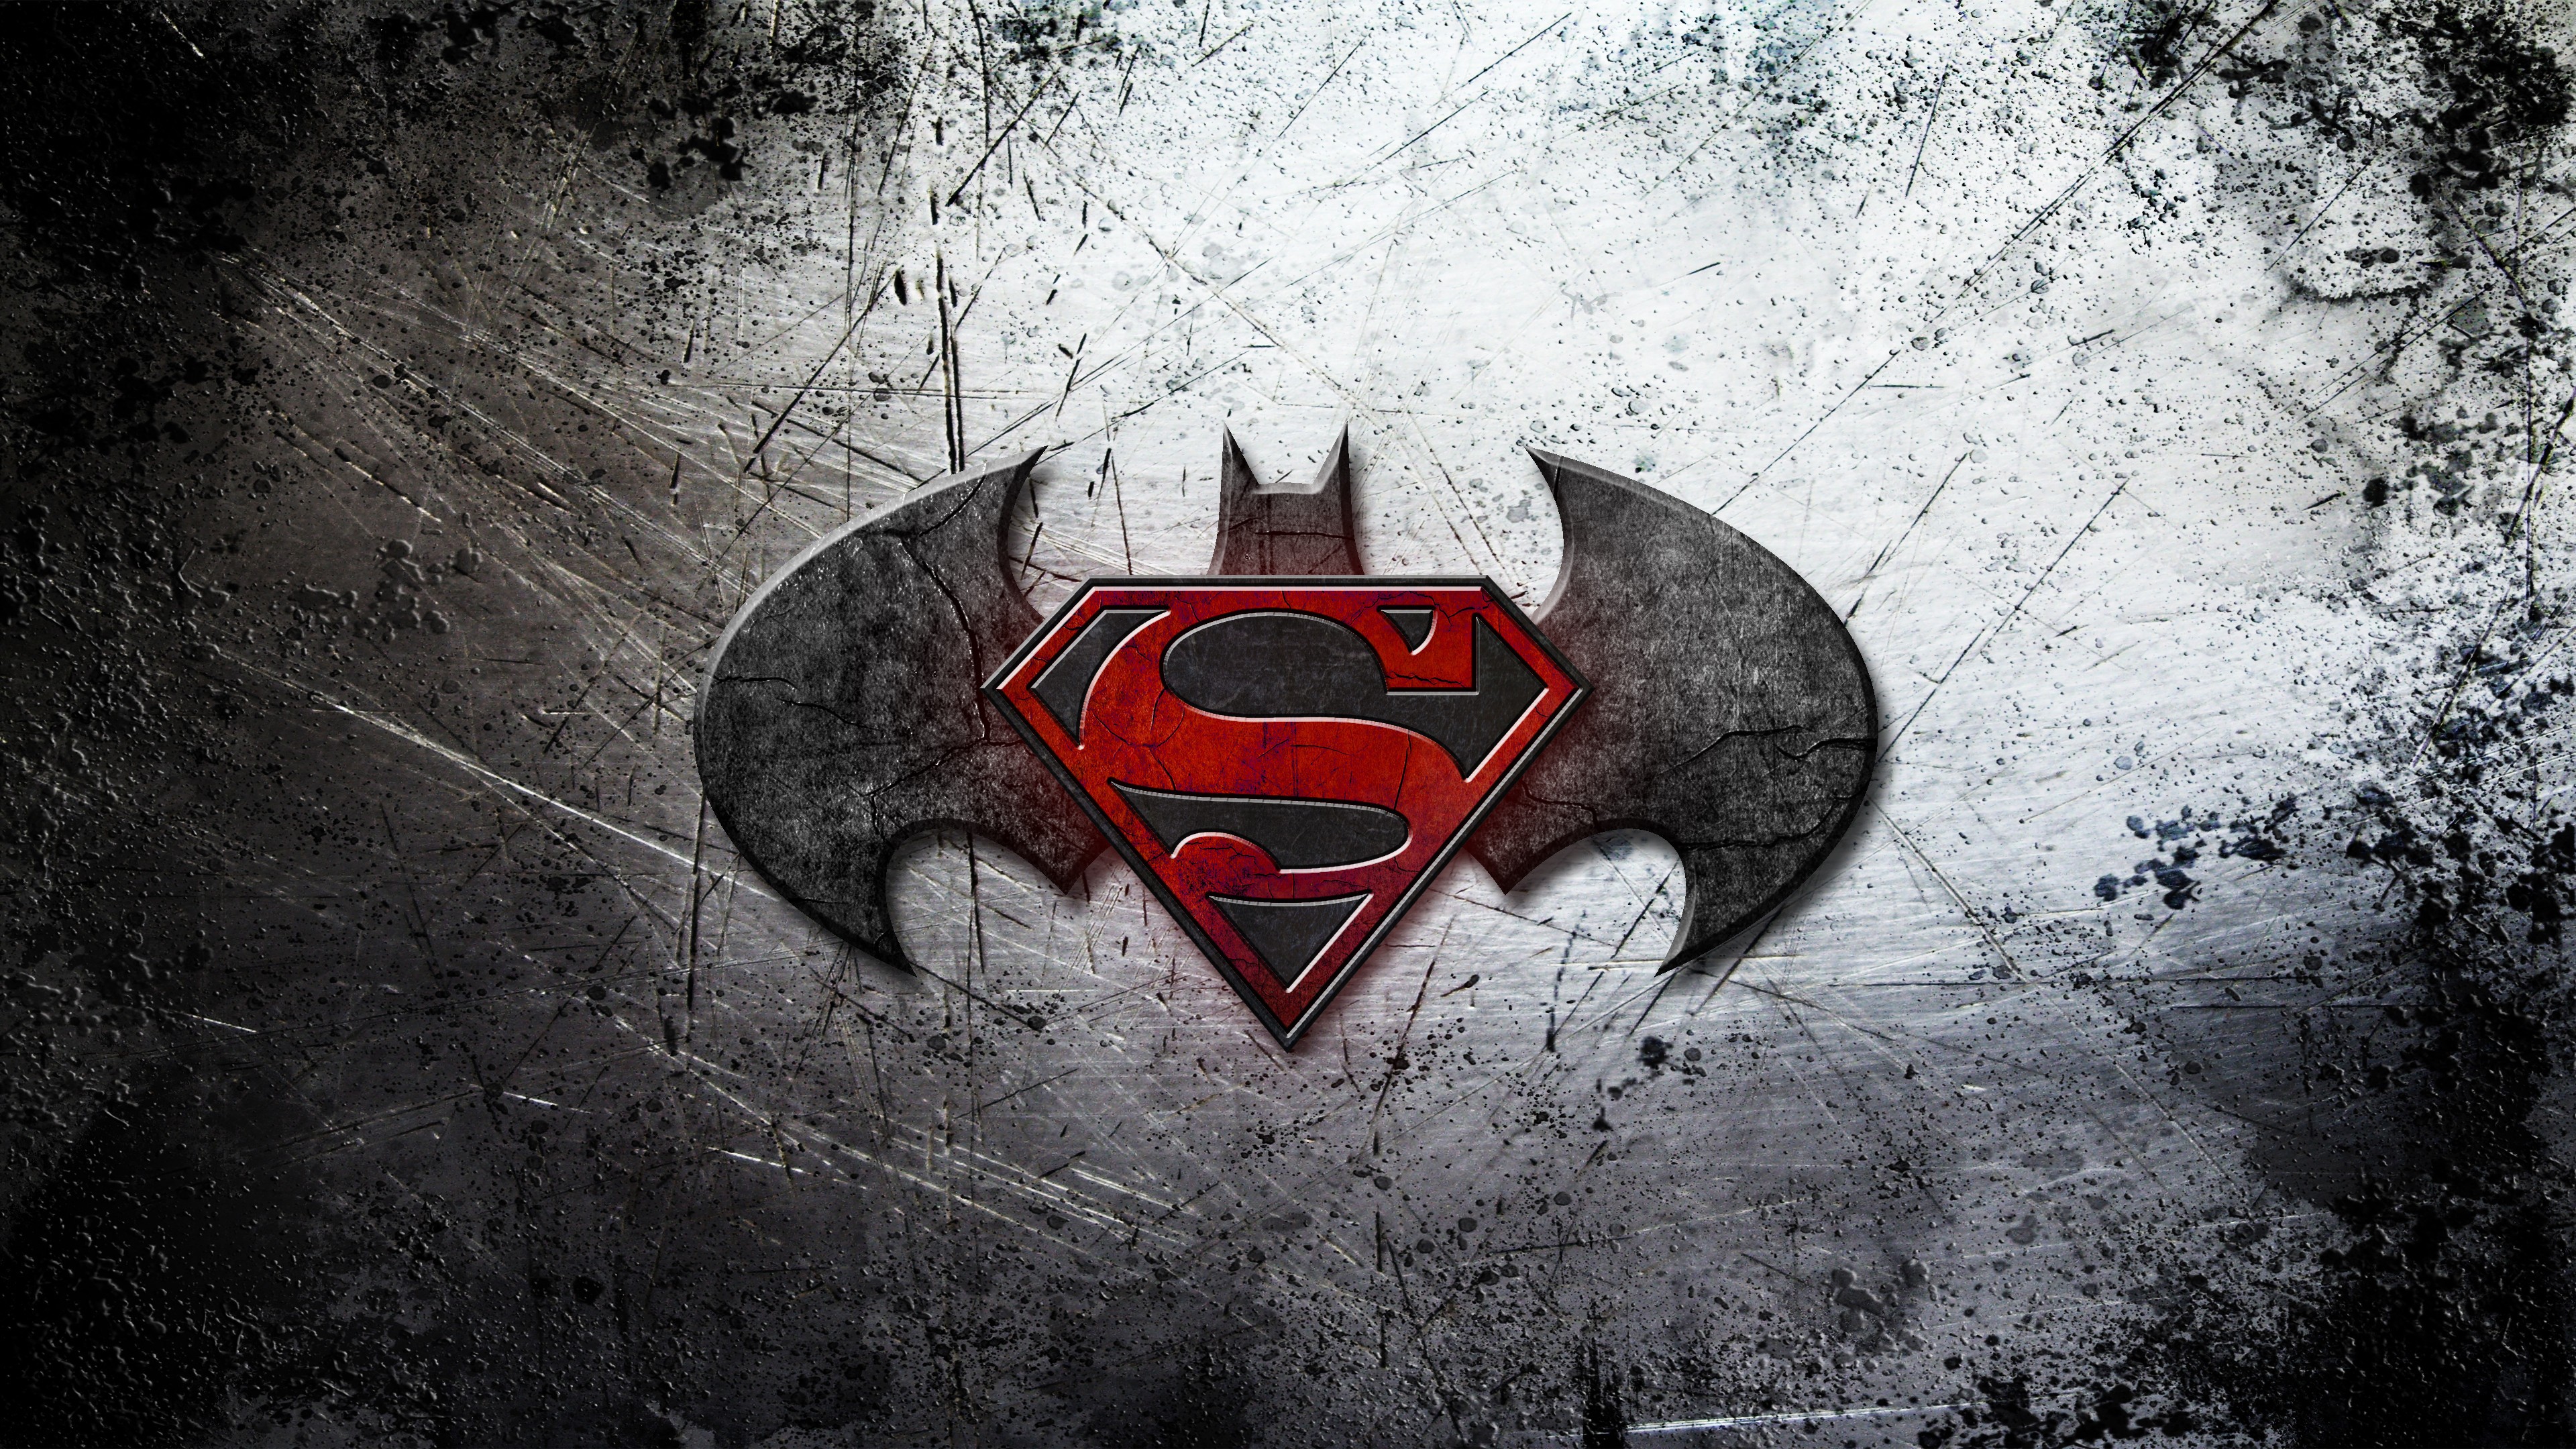 General 3840x2160 movies Batman v Superman: Dawn of Justice logo grunge superman logo Batman logo superhero DC Comics